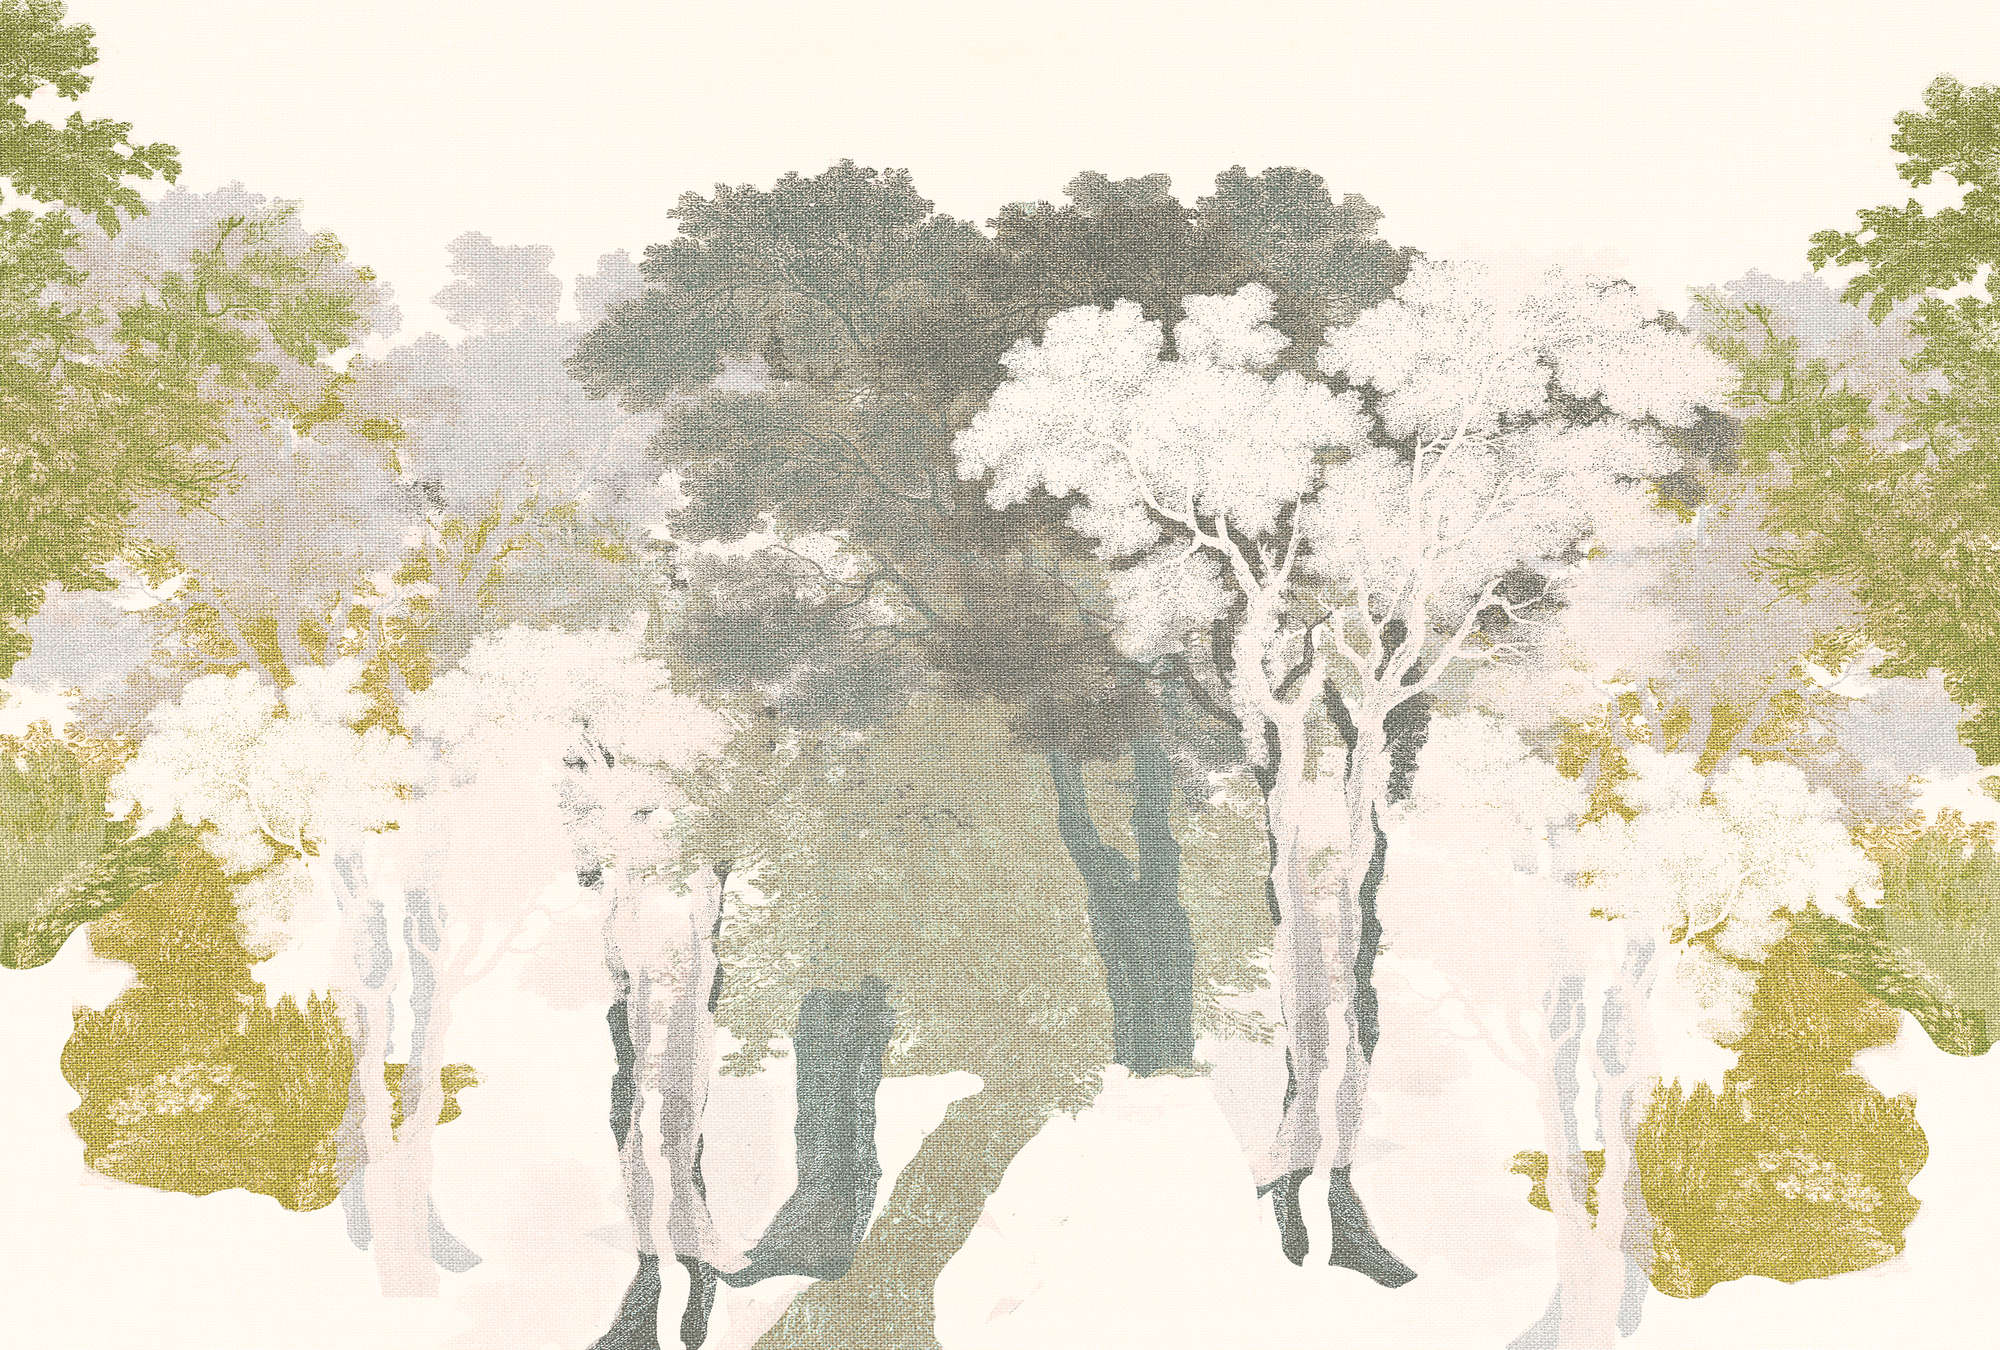             Papier peint Arbres, design de forêt & aspect lin - vert, gris, blanc
        